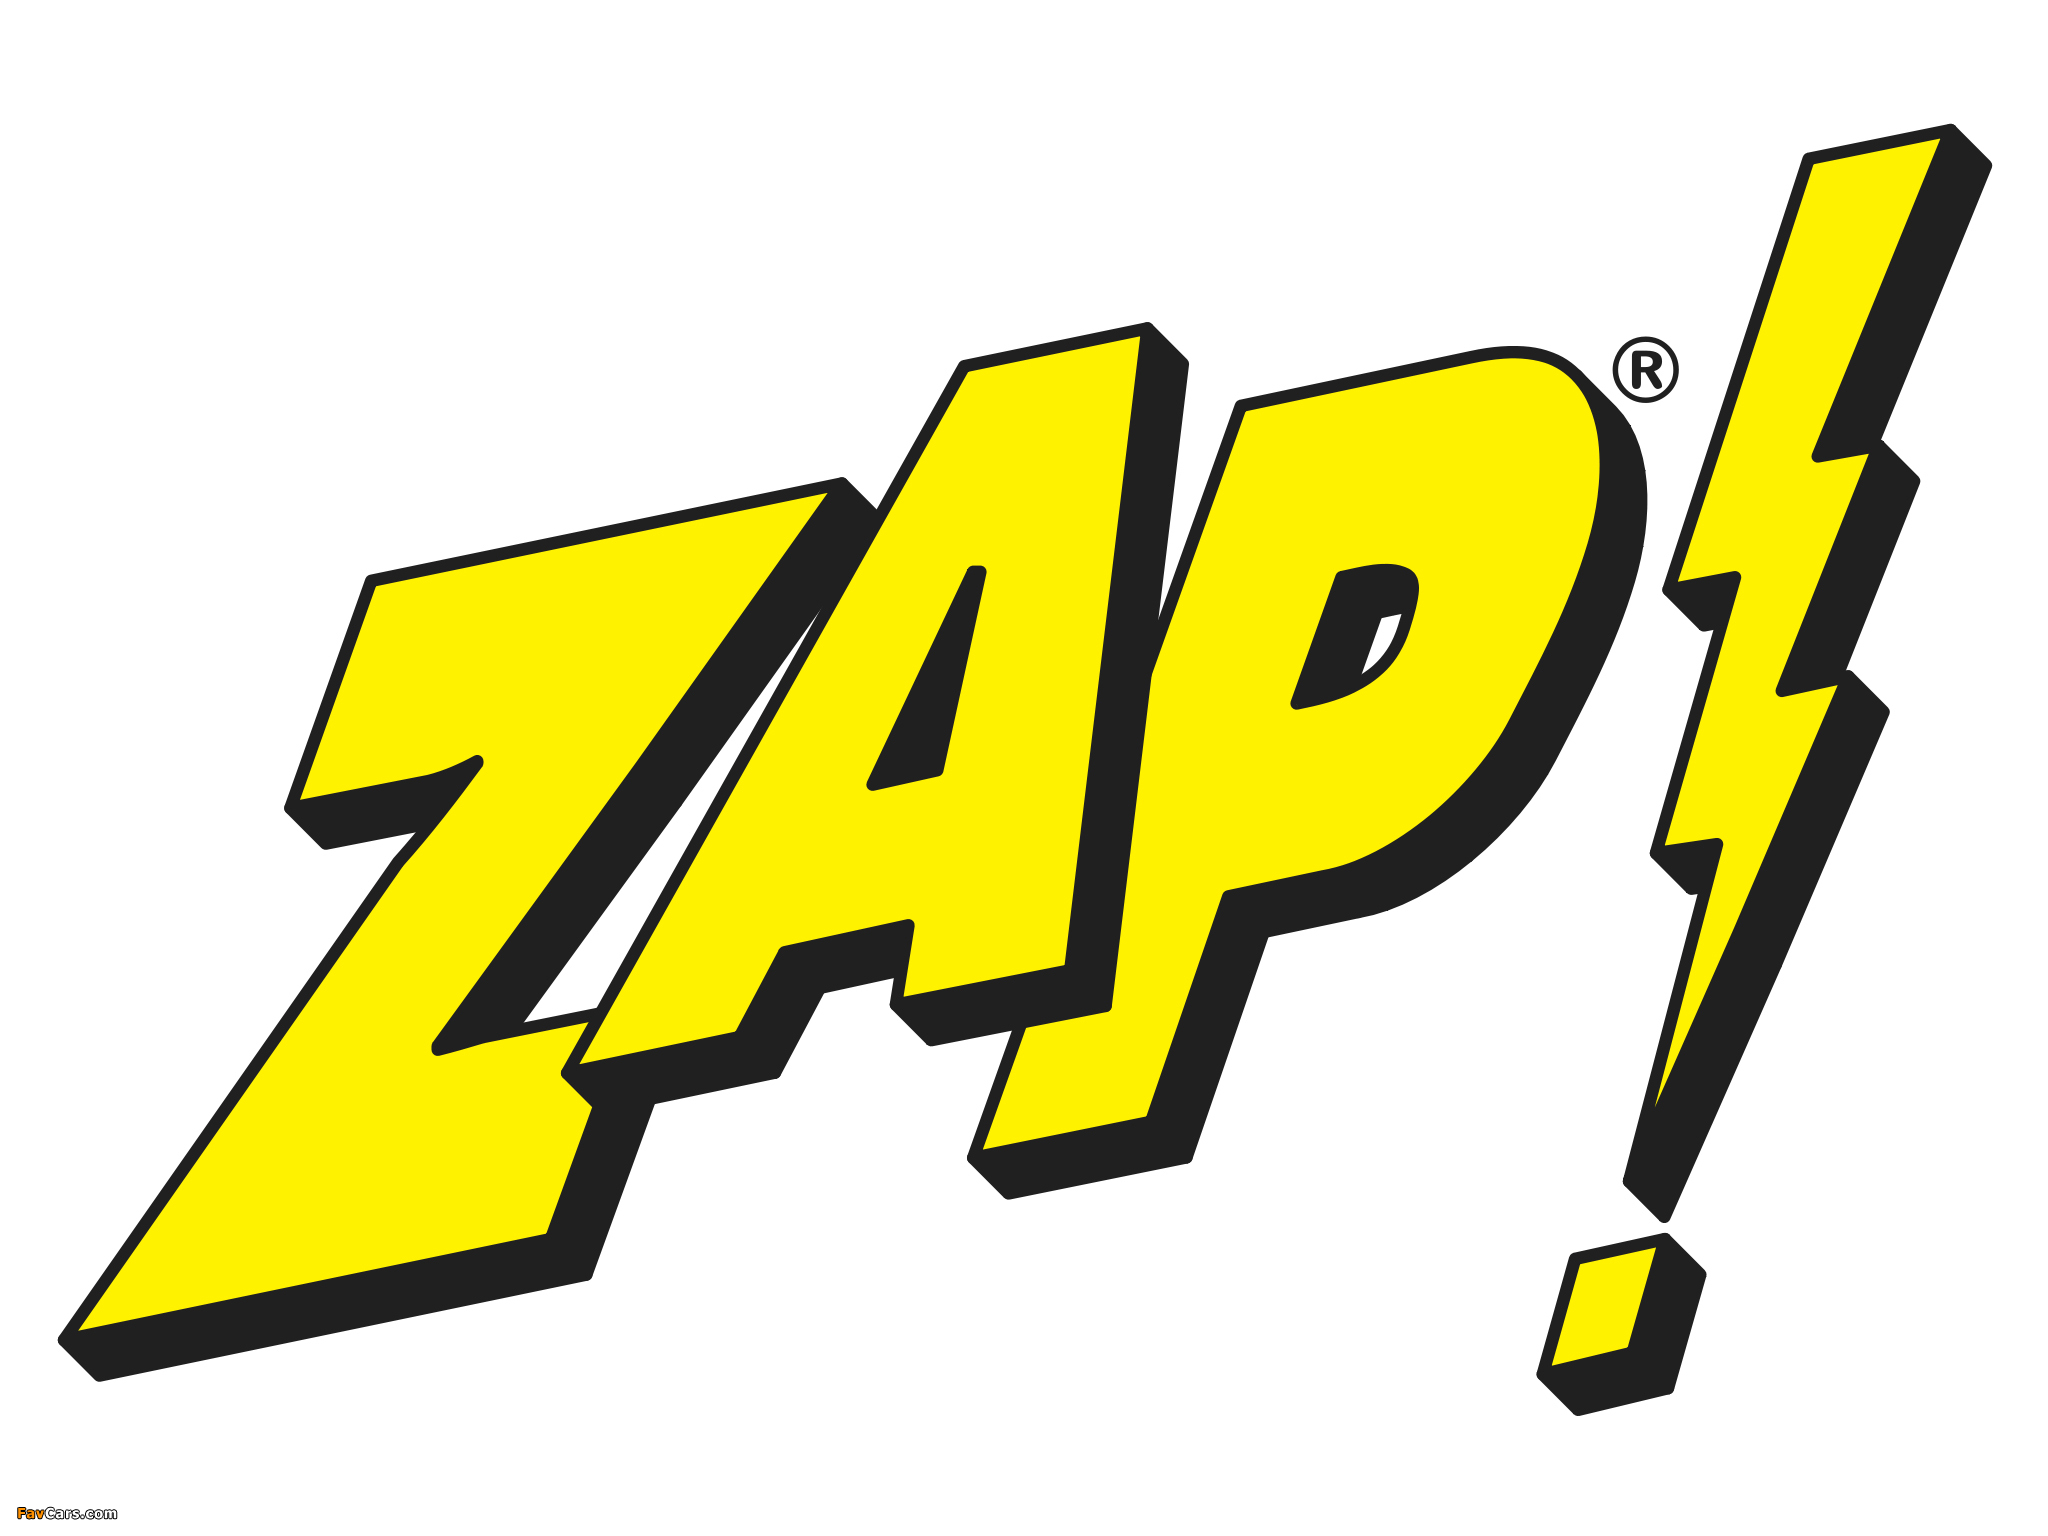 ZAP images (2048 x 1536)